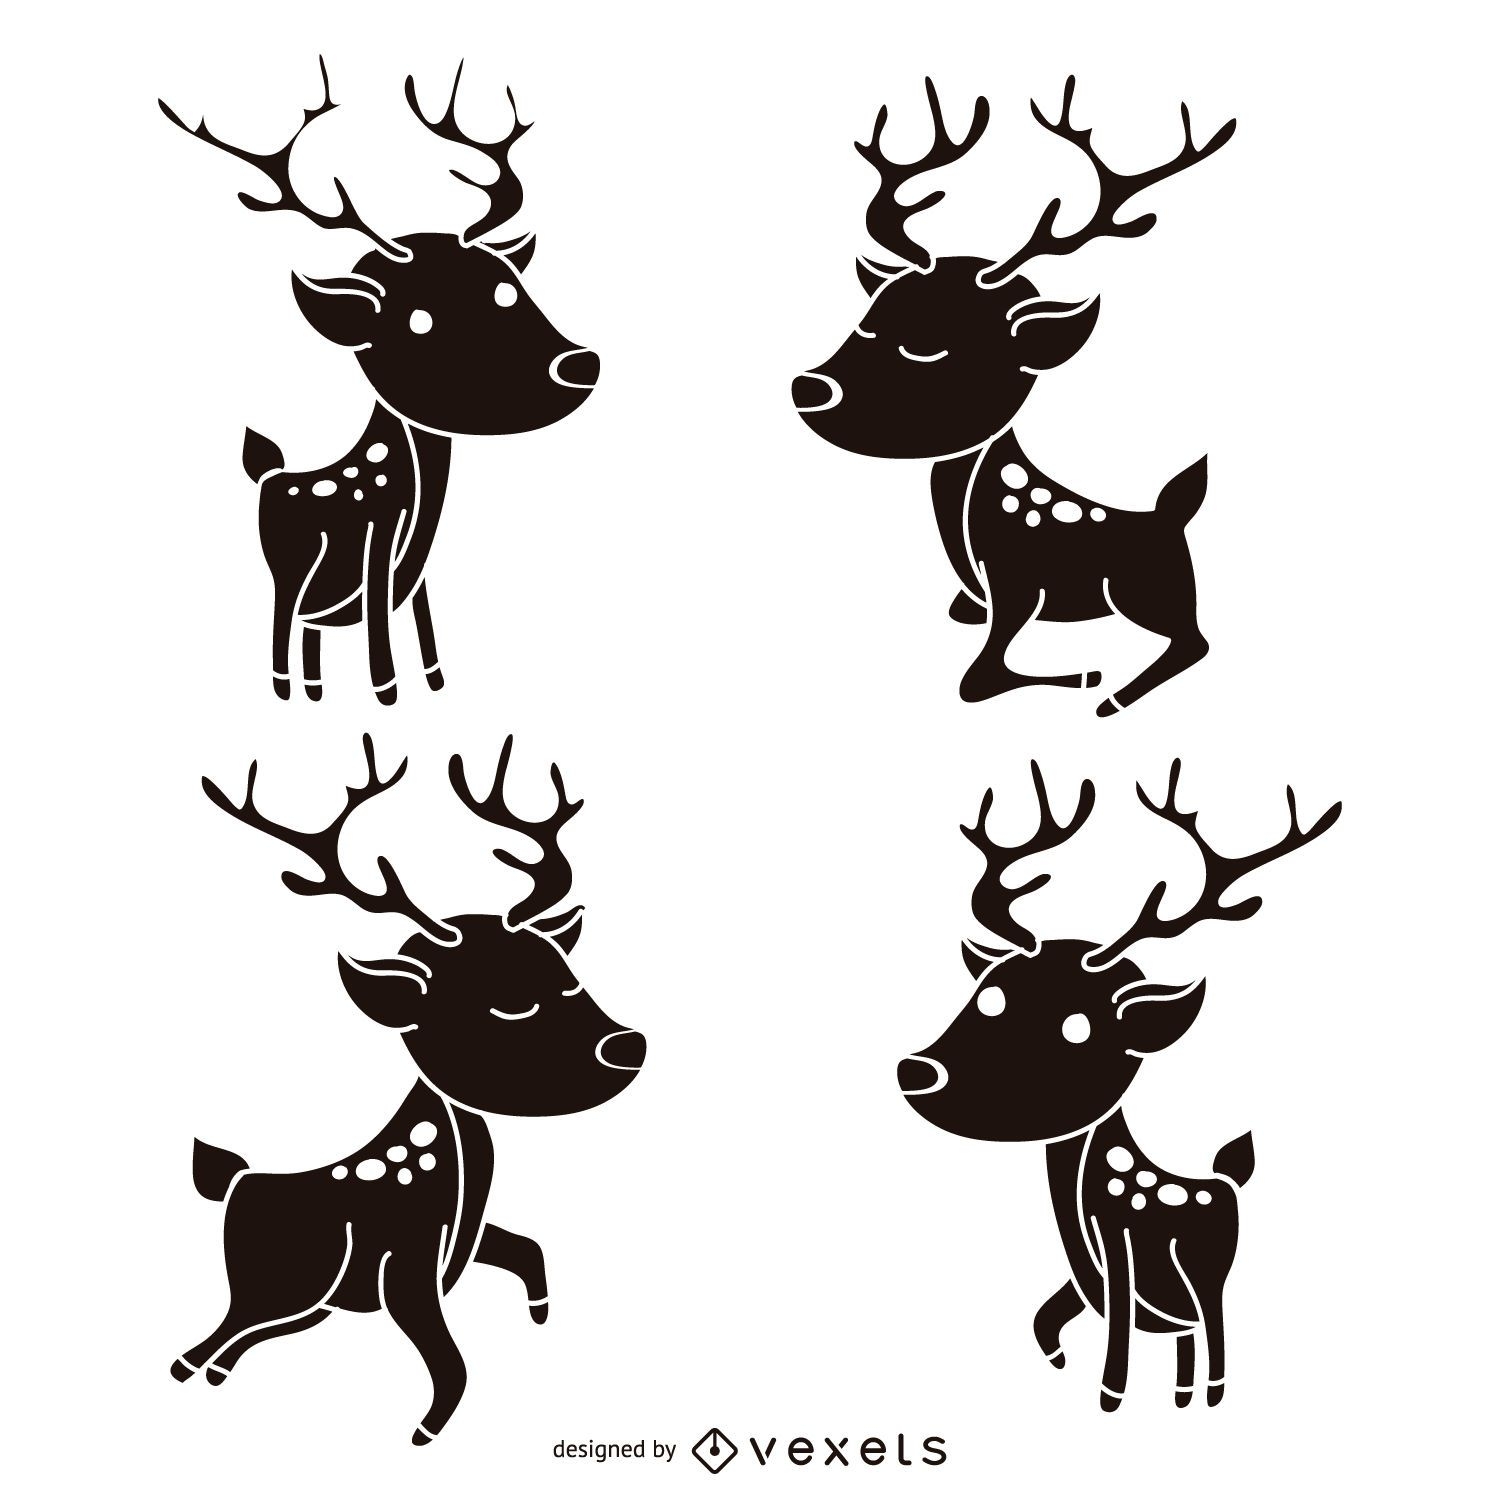 Reindeer silhouette set